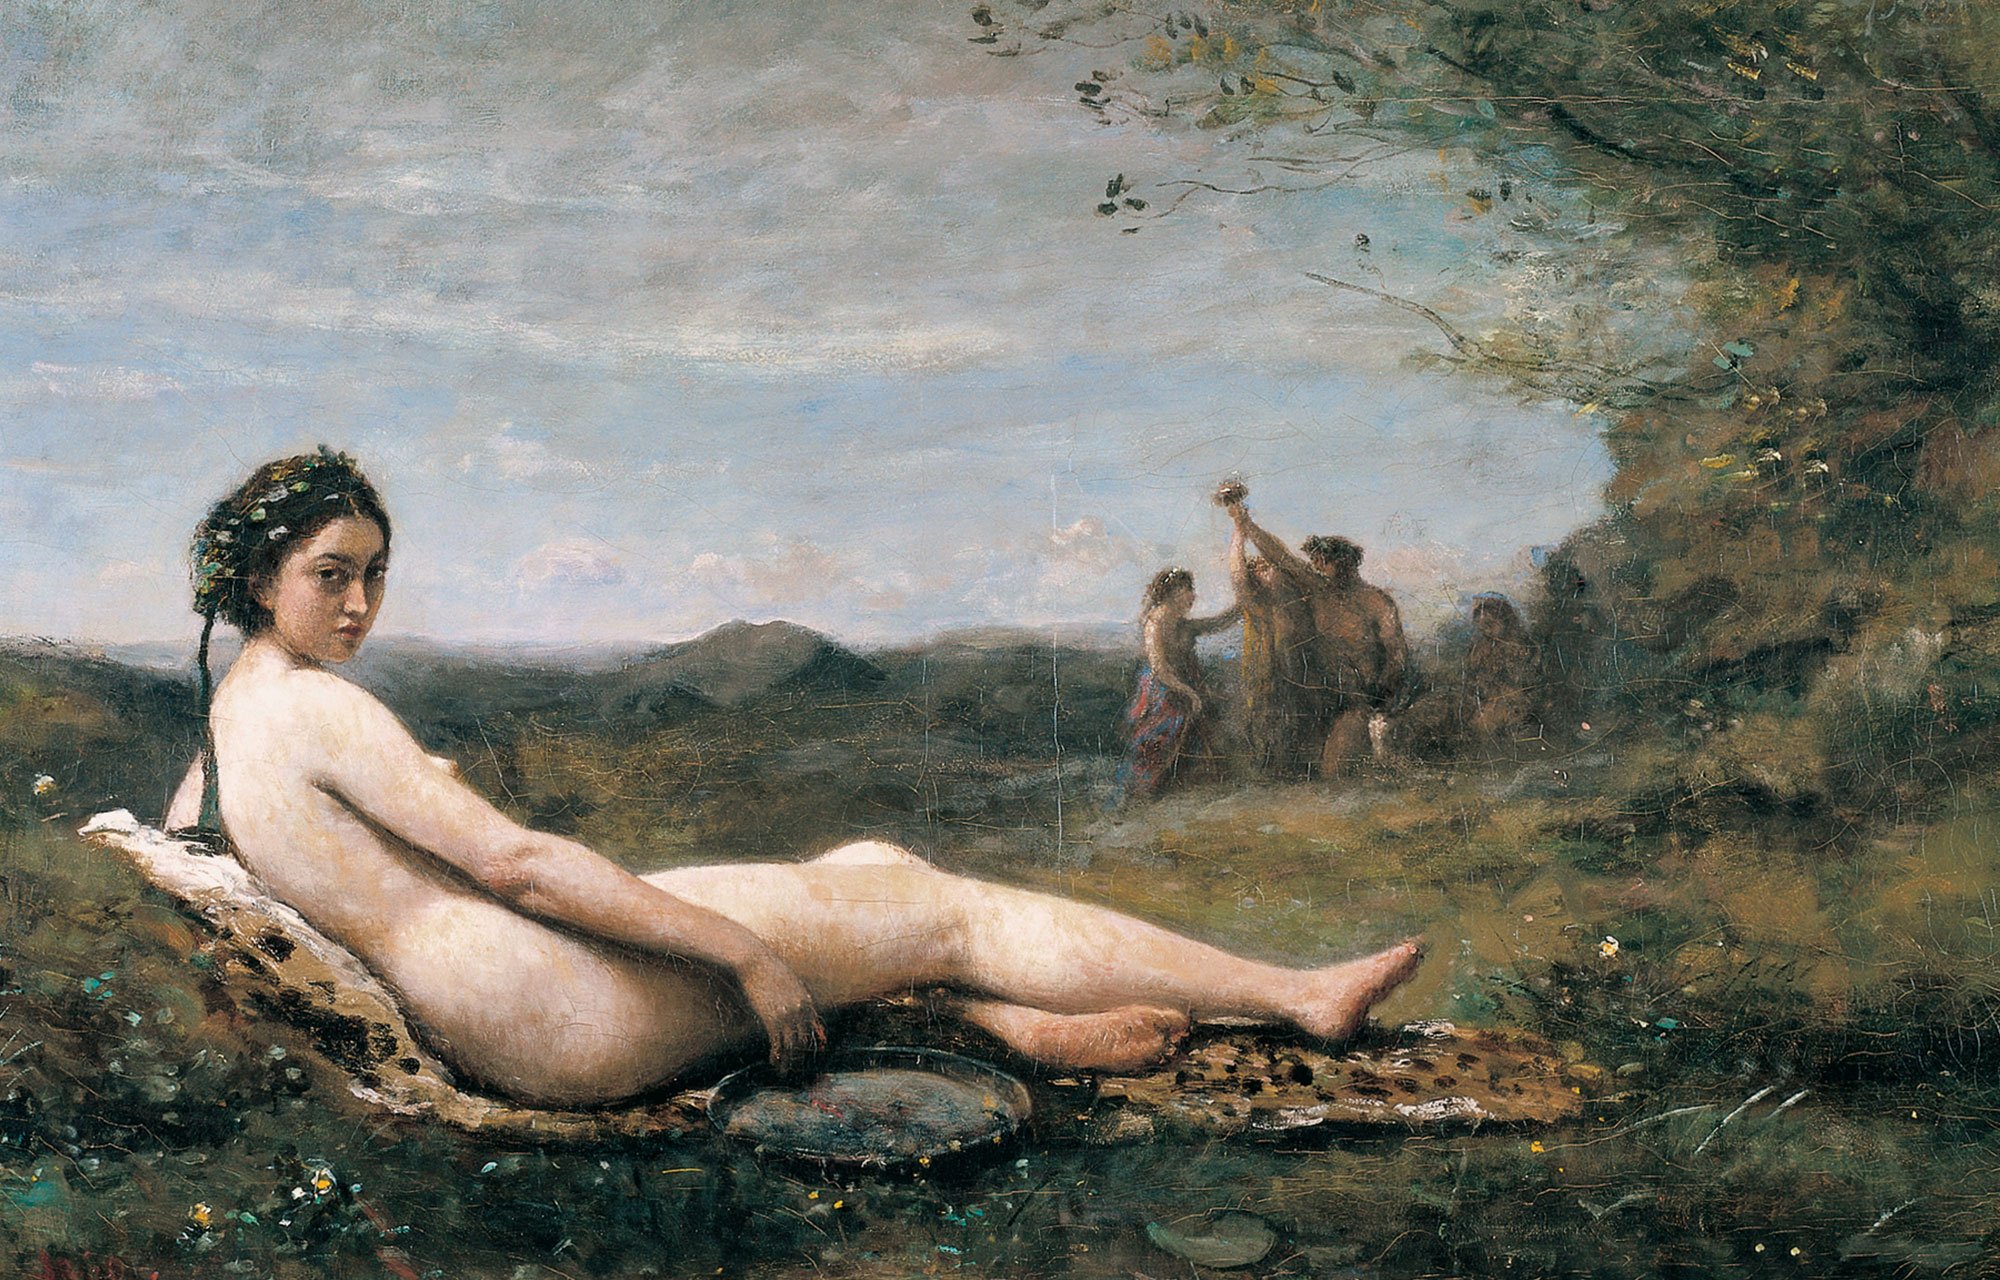 Eine junge Frau liegt nackt auf einem Pelz in der Landschaft. Im Hintergrund spielt eine Gruppe Menschen. Das Bild ist von Camille Corot.